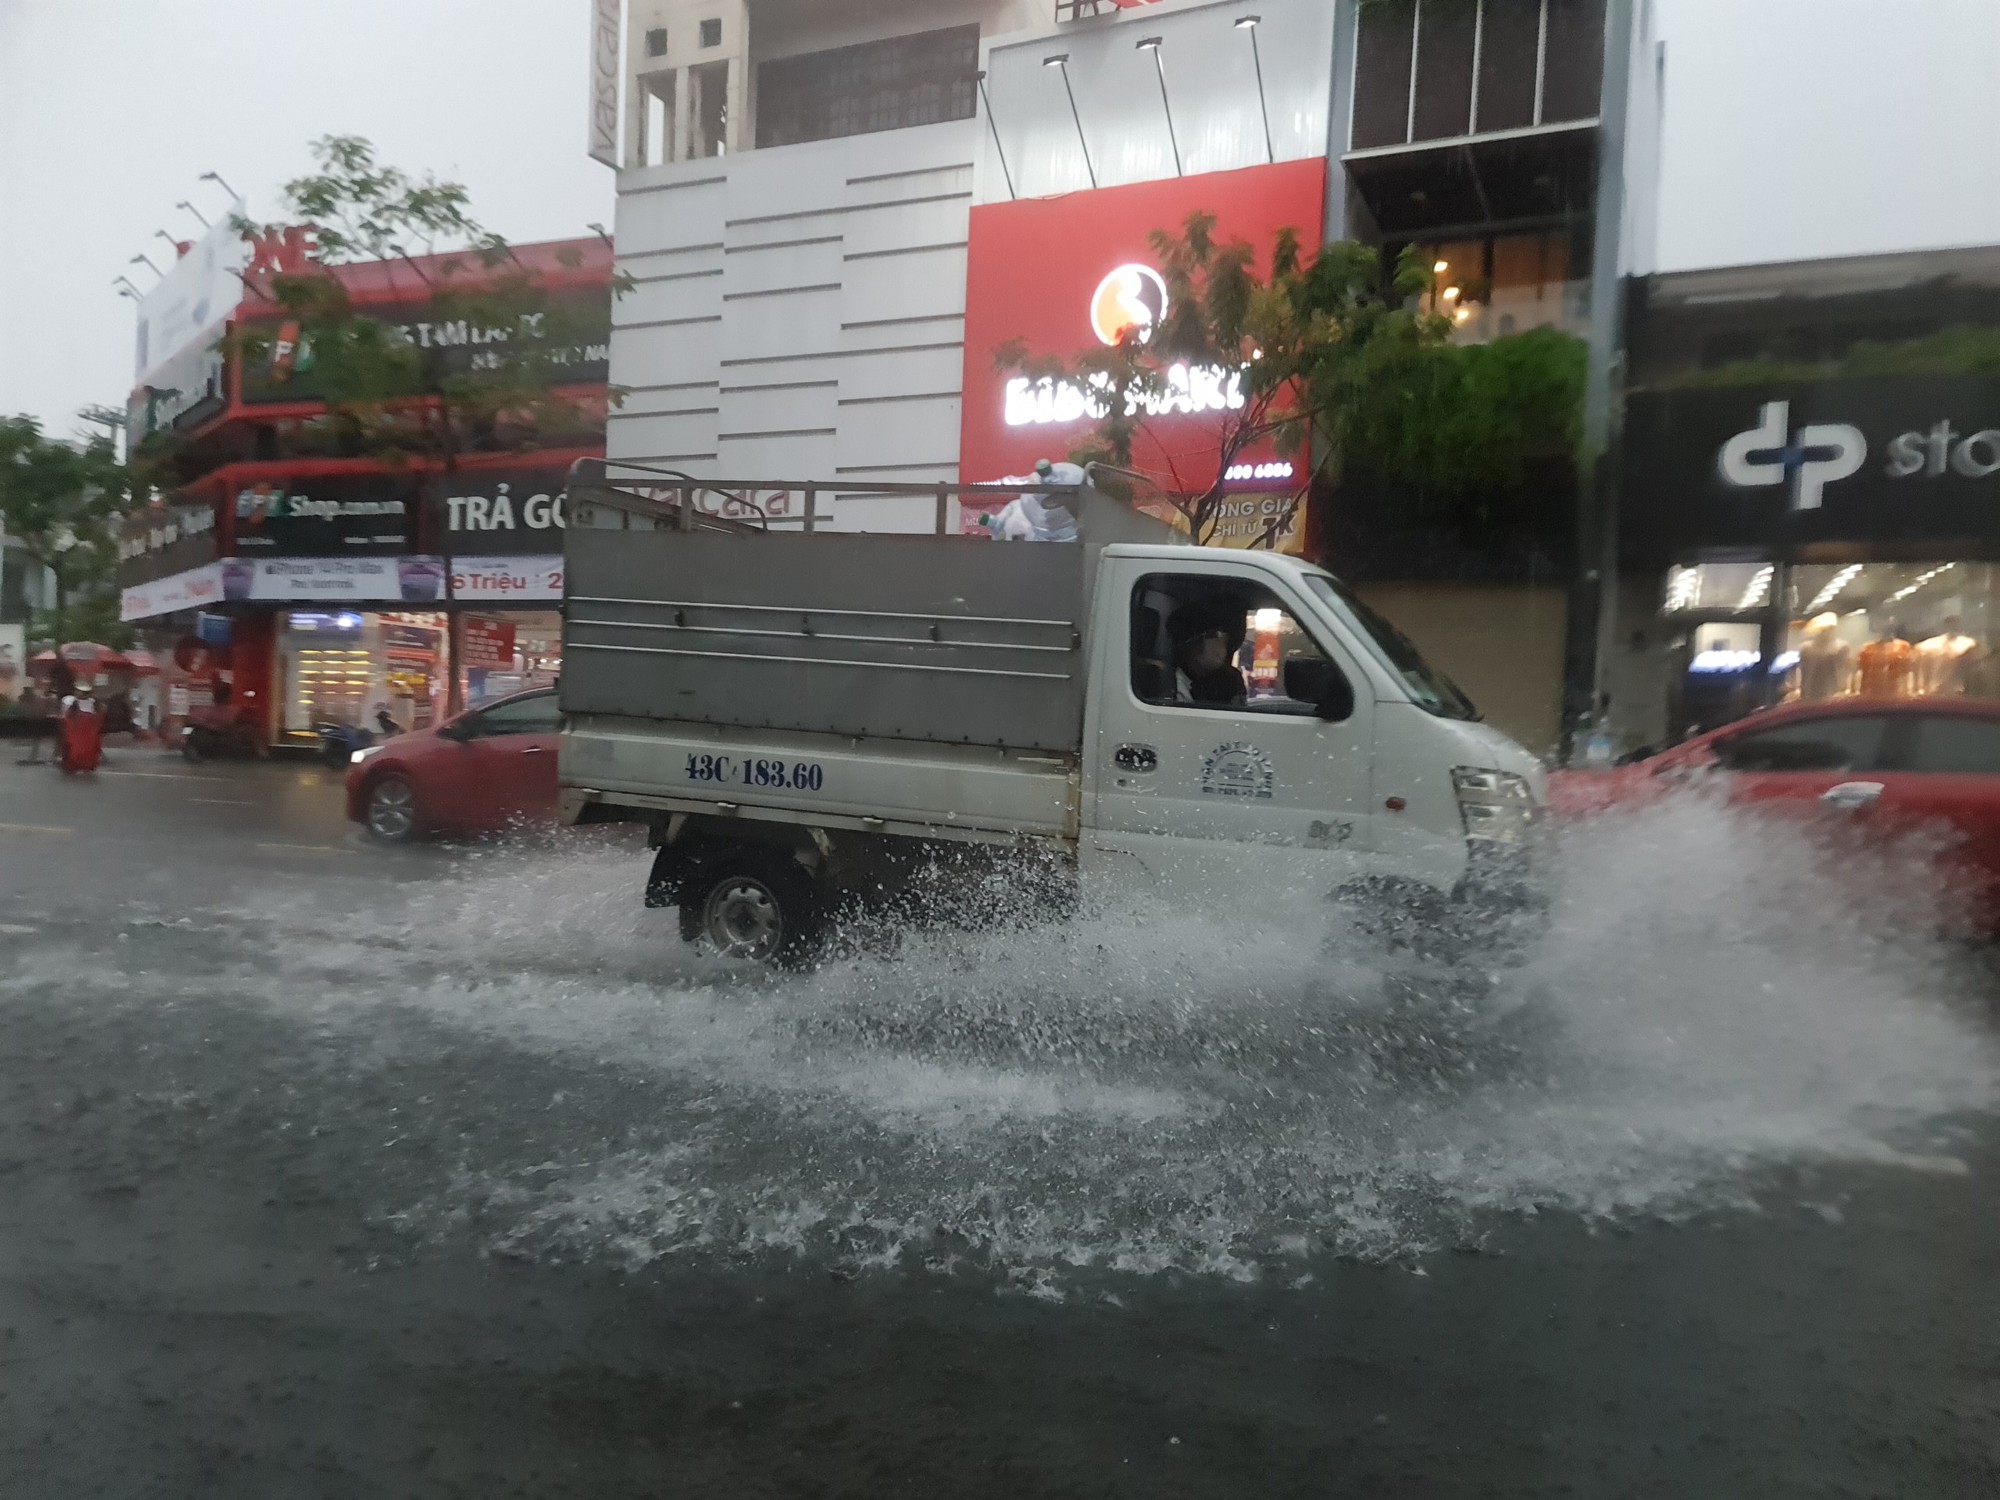 Bão số 5 gây mưa lớn, đường phố Đà Nẵng ngập, 2 tàu cá Khánh Hòa bị chìm  - Ảnh 4.